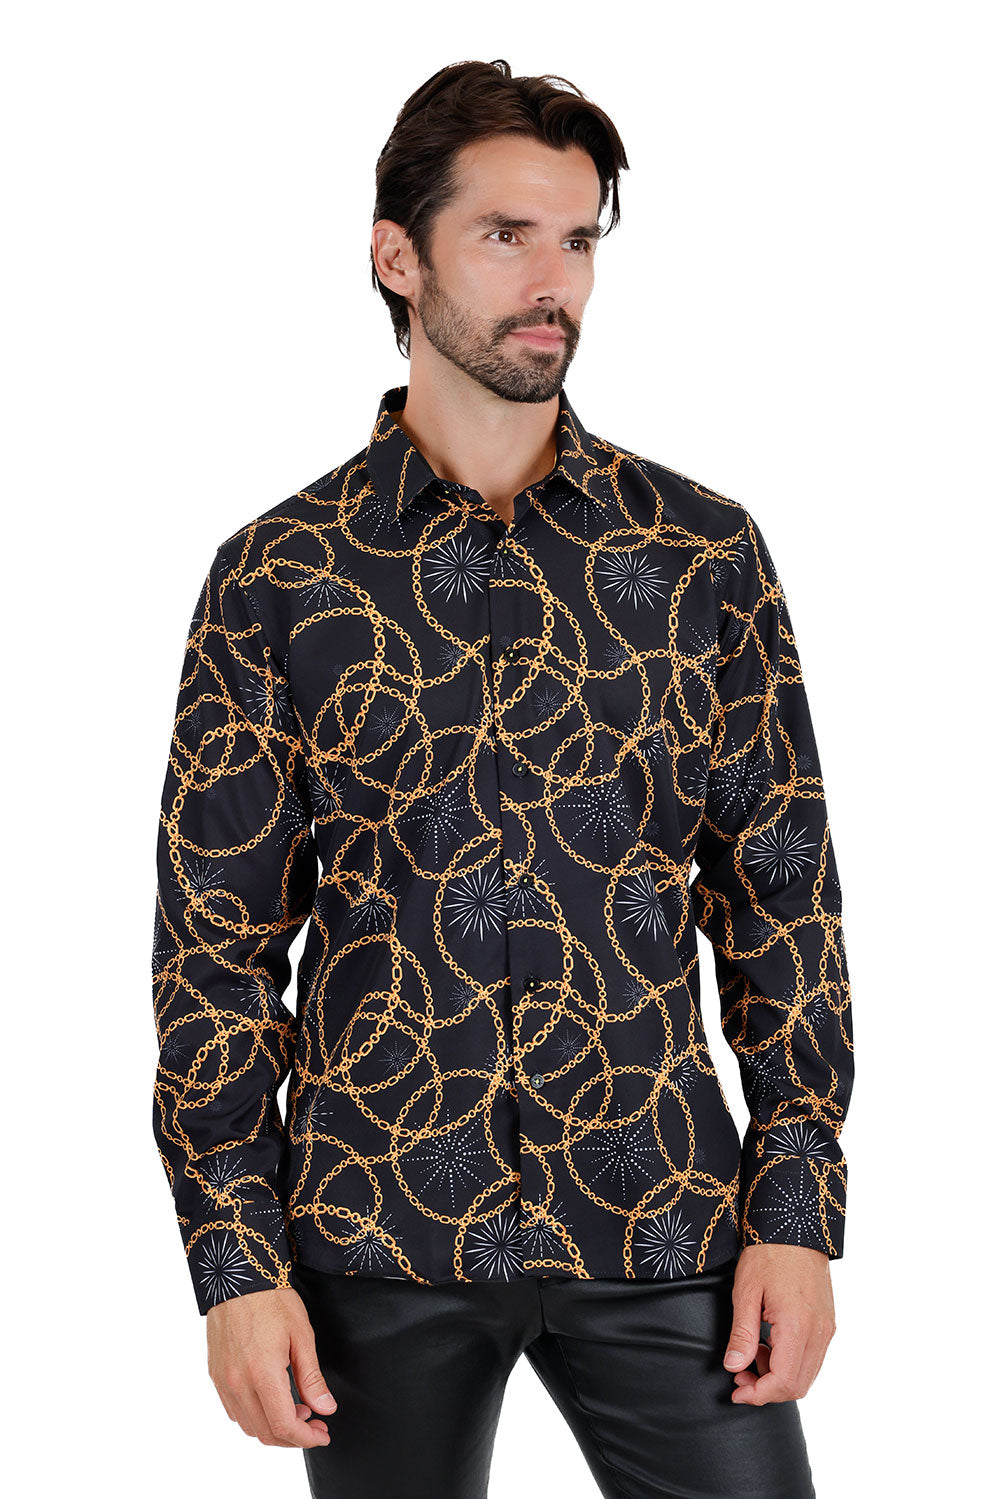 Vassari Men's Geometric Printed Long Sleeve Shirts 3VS14 Black